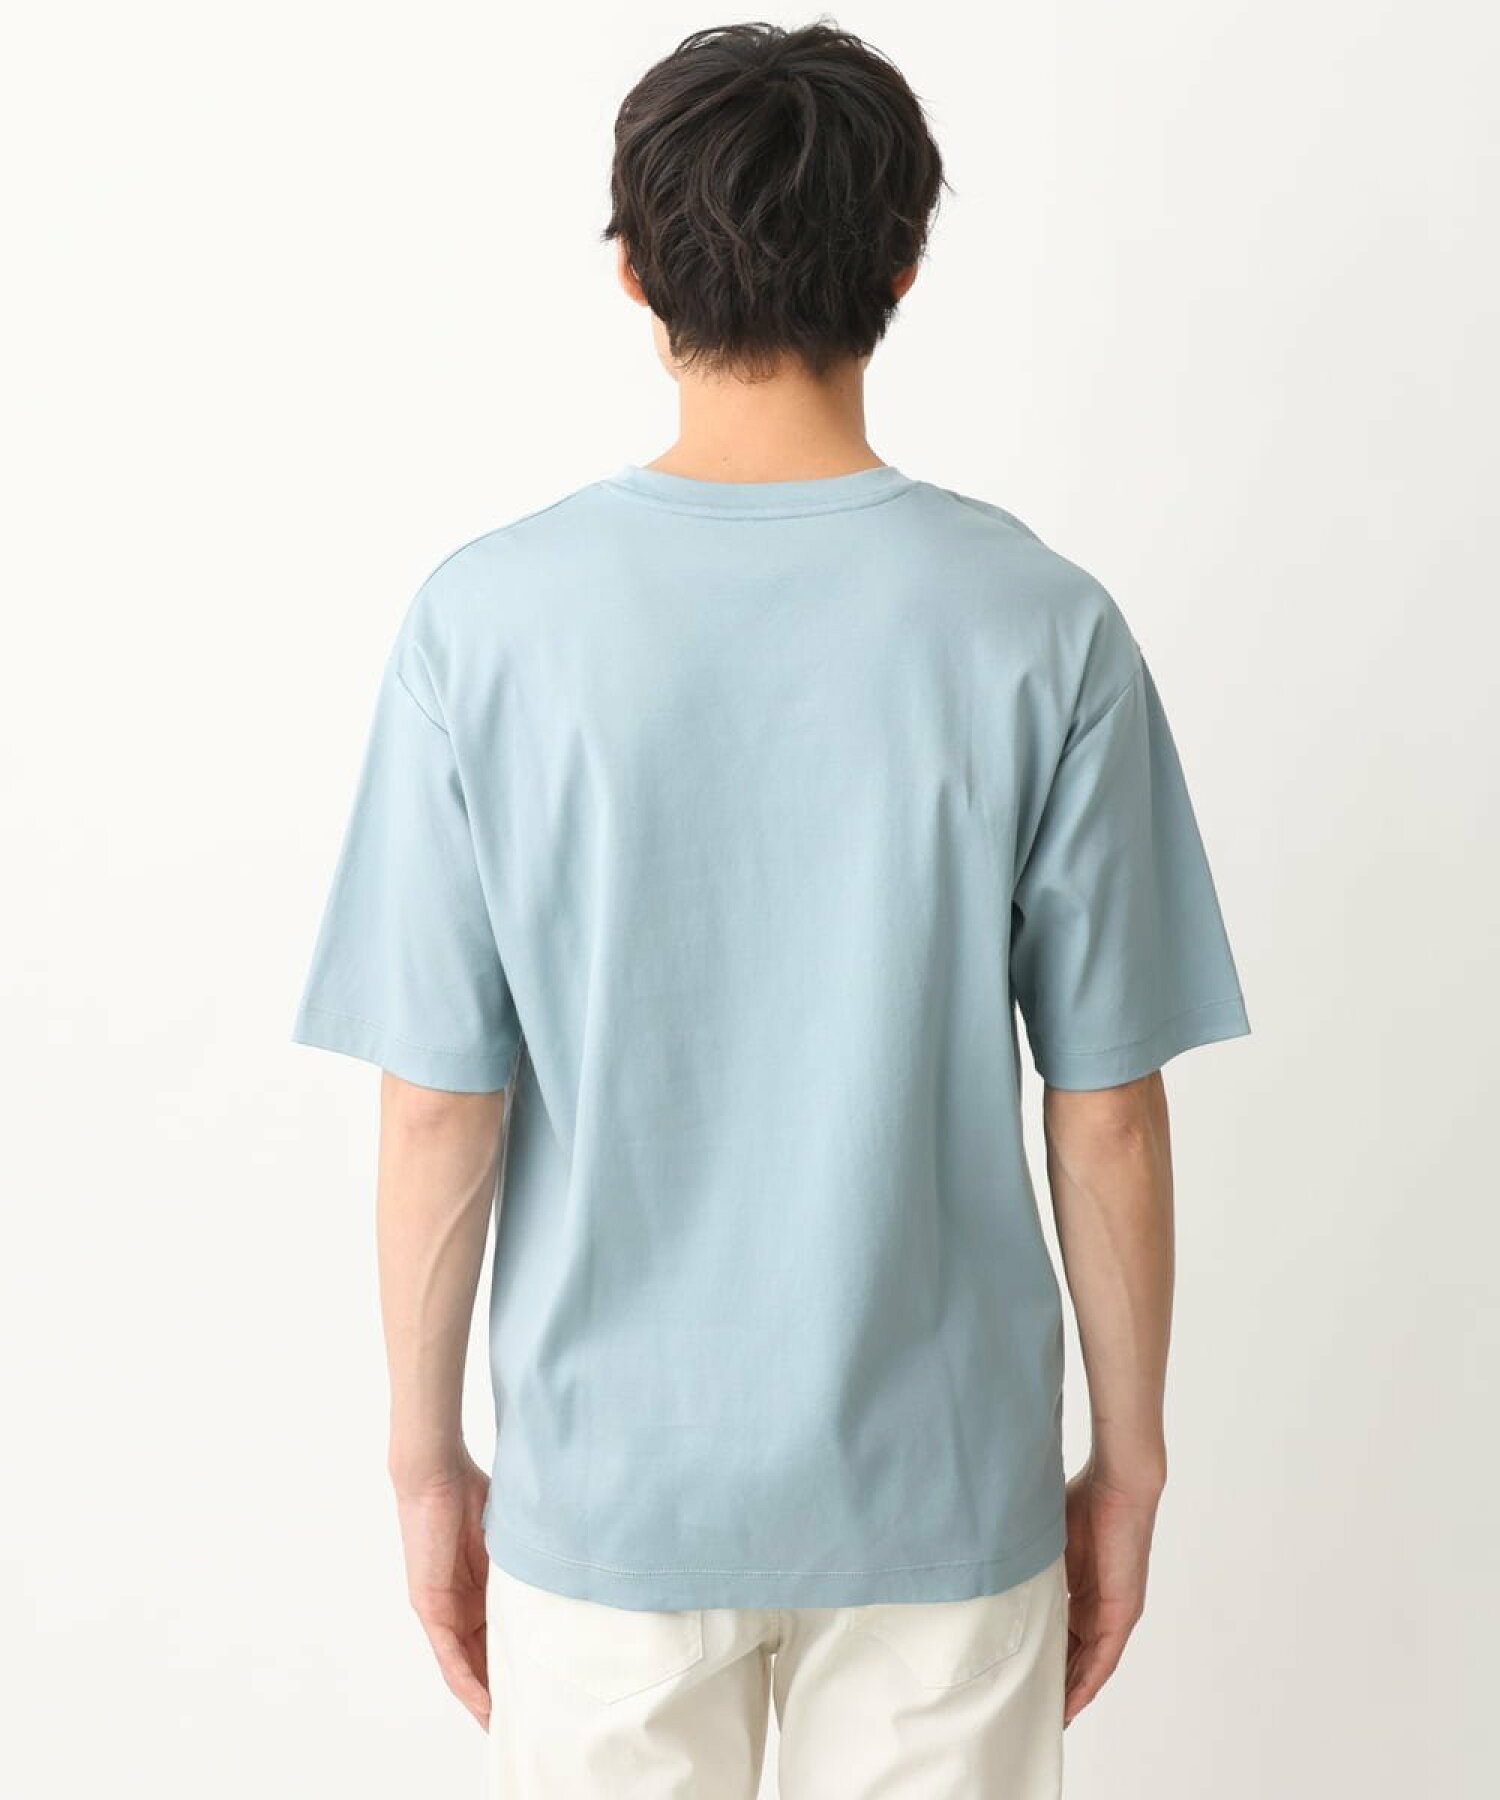 【累計2.2万枚販売/ユニセックス】シルケットスムースセミワイドTシャツ